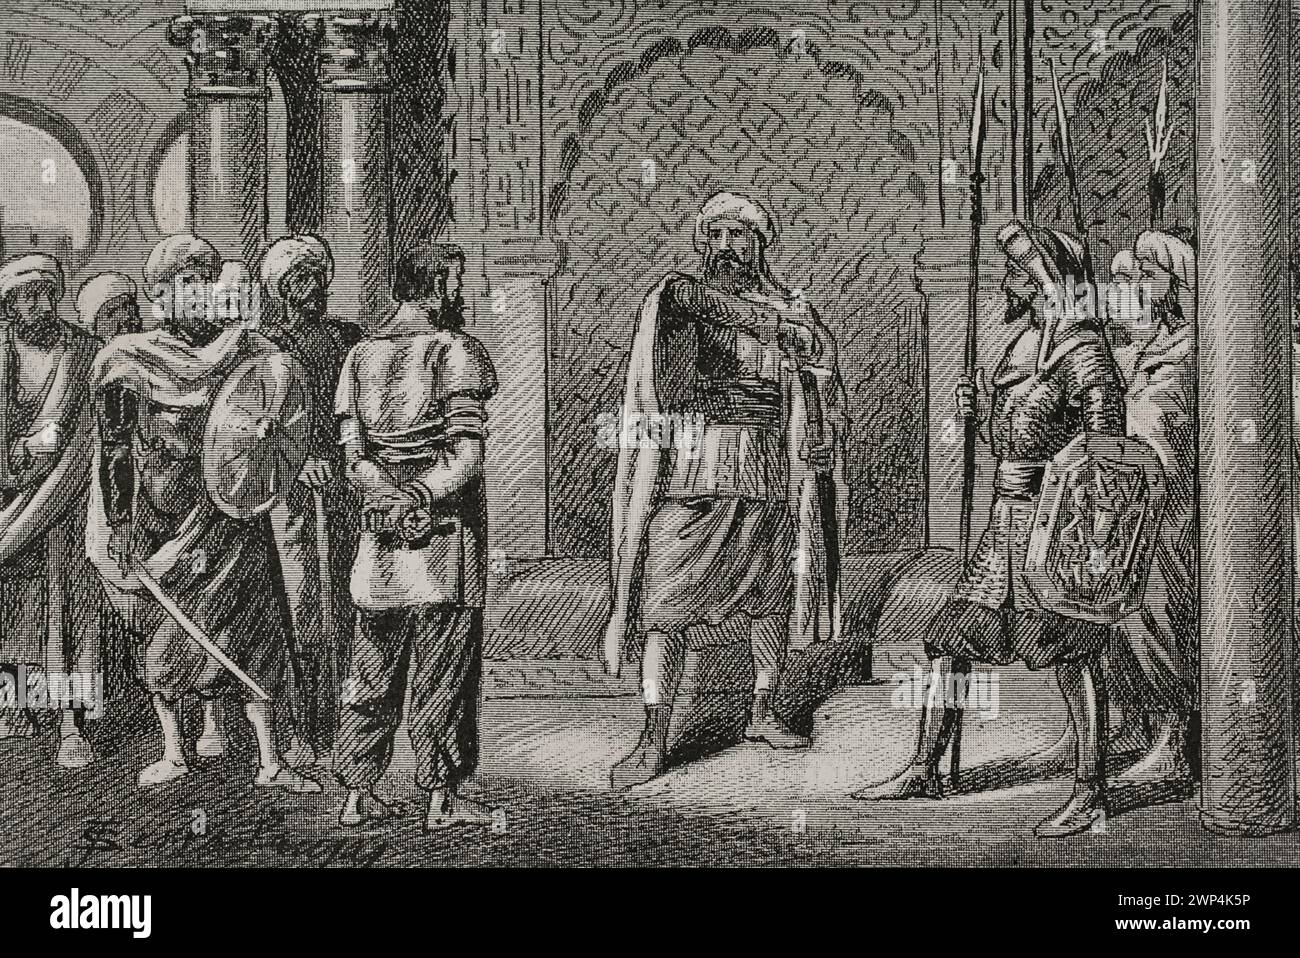 Ali ibn Hammud al-Nasir (1018). Sesto califfo del Califfato di Córdoba (1016-1018). Fu nominato governatore di Ceuta dal califfo Sulayman al-Musta'in. Ali ibn Hammud cospirò contro il califfo Sulayman al-Musta'in e, dopo aver ottenuto l'ingresso a Córdoba, fu proclamato Califfo il luglio 1016. Ordinò a Sulayman, suo padre e suo fratello di essere imprigionati e uccisi. '... Prese Sulayman e ordinò di decapitarlo." Incisione di Serra Pausas. "Glorias Españolas" (Glorie di Spagna). Volume II Pubblicato a Barcellona, 1890. Foto Stock